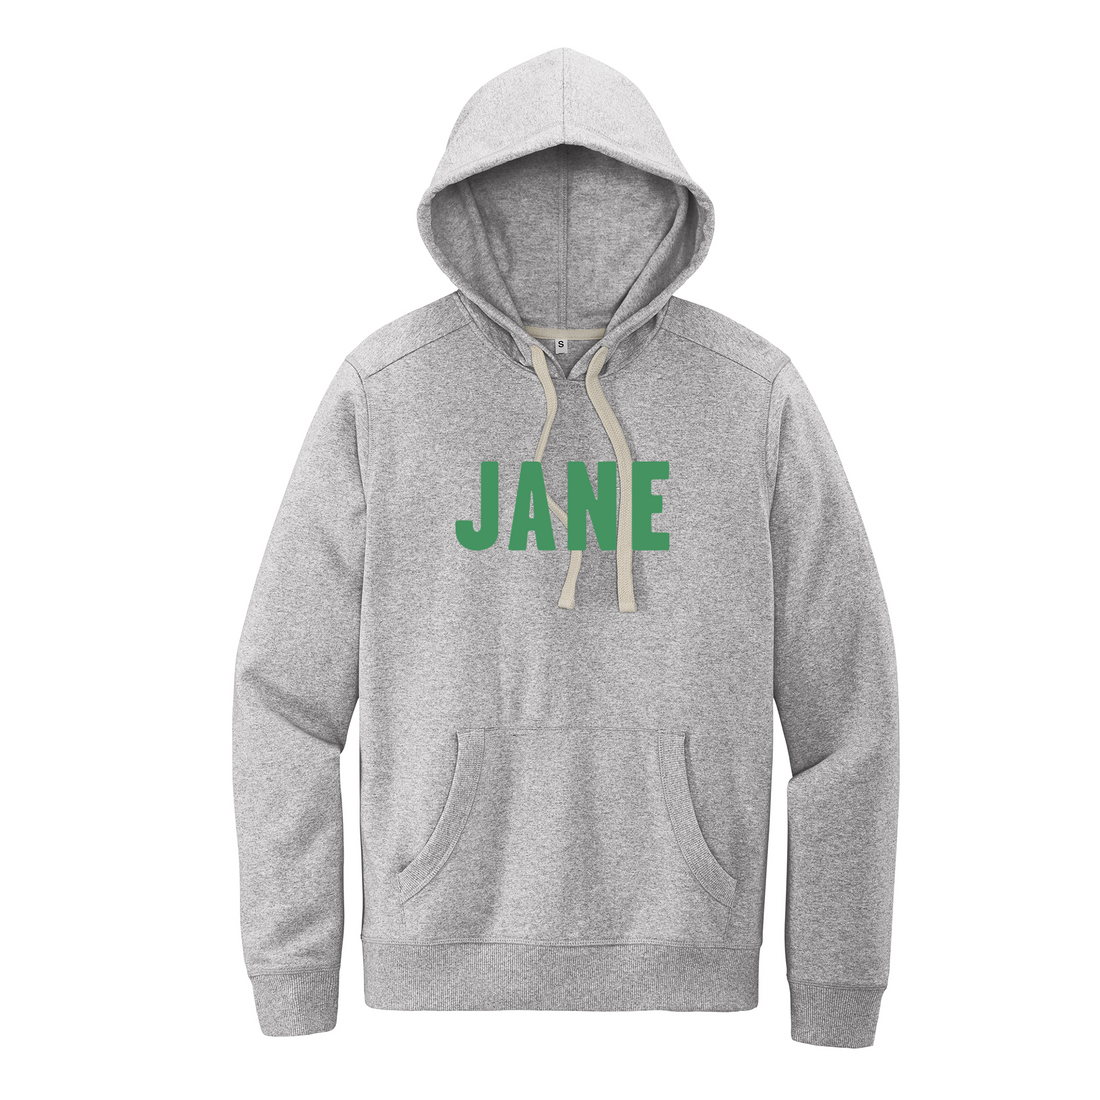 Unisex JANE Hoodie Sweatshirt in Grey with Green Letters